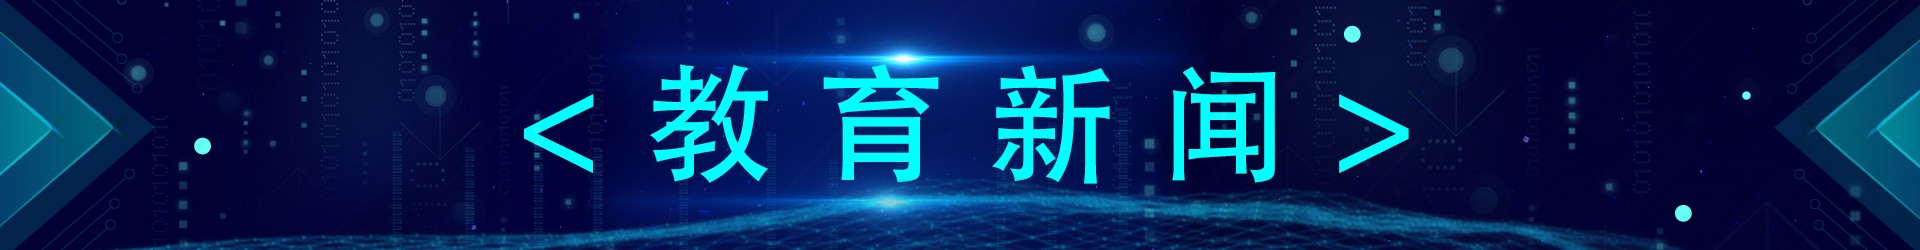 北京中软鼎晟科技有限公司推出便携式录制主机